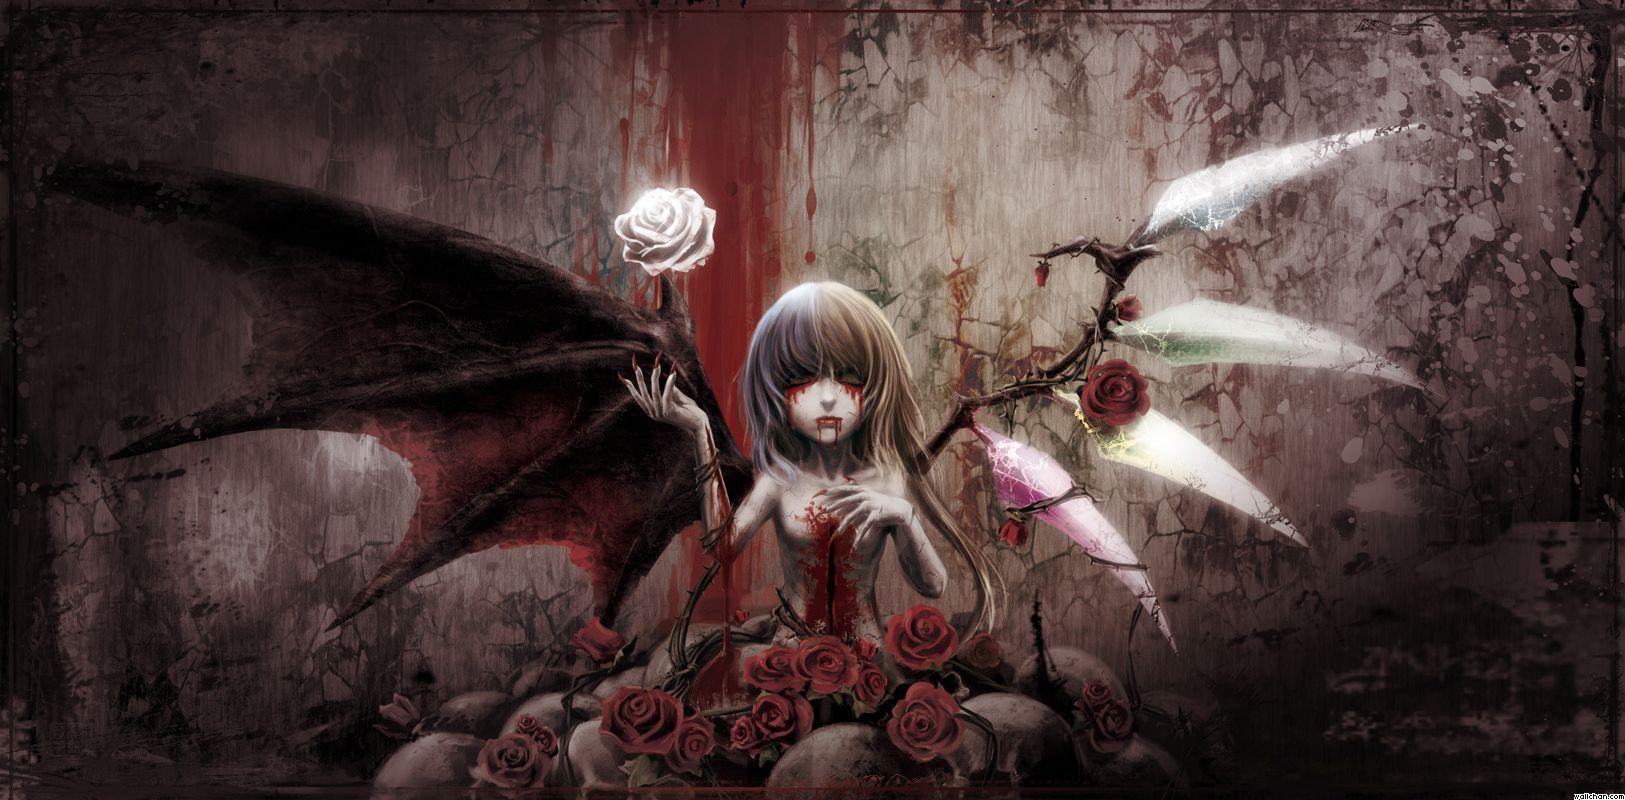 anime demon and angel girl